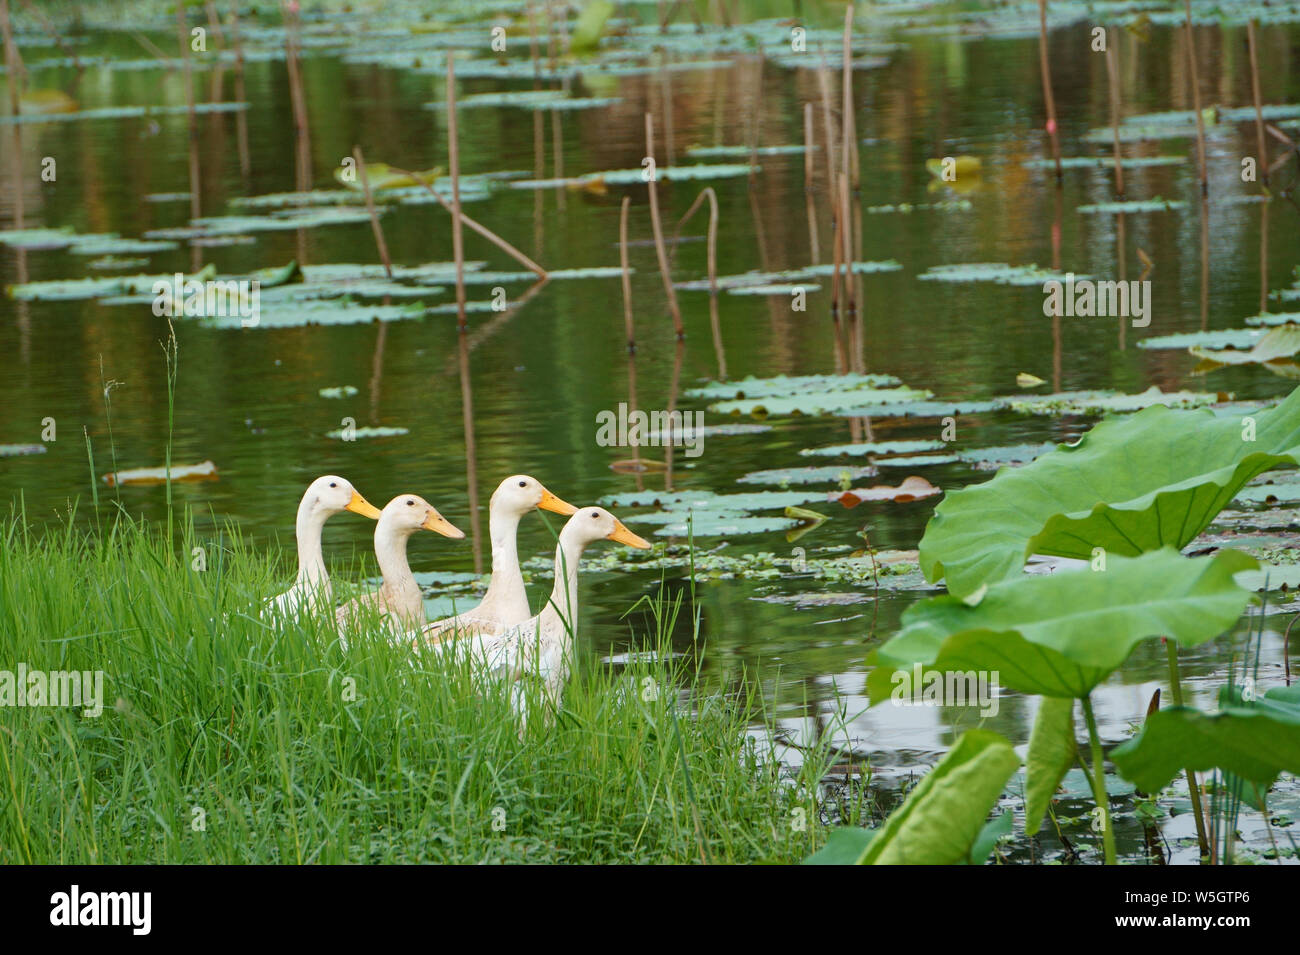 Ducks on the grass next to the lotus lake Stock Photo